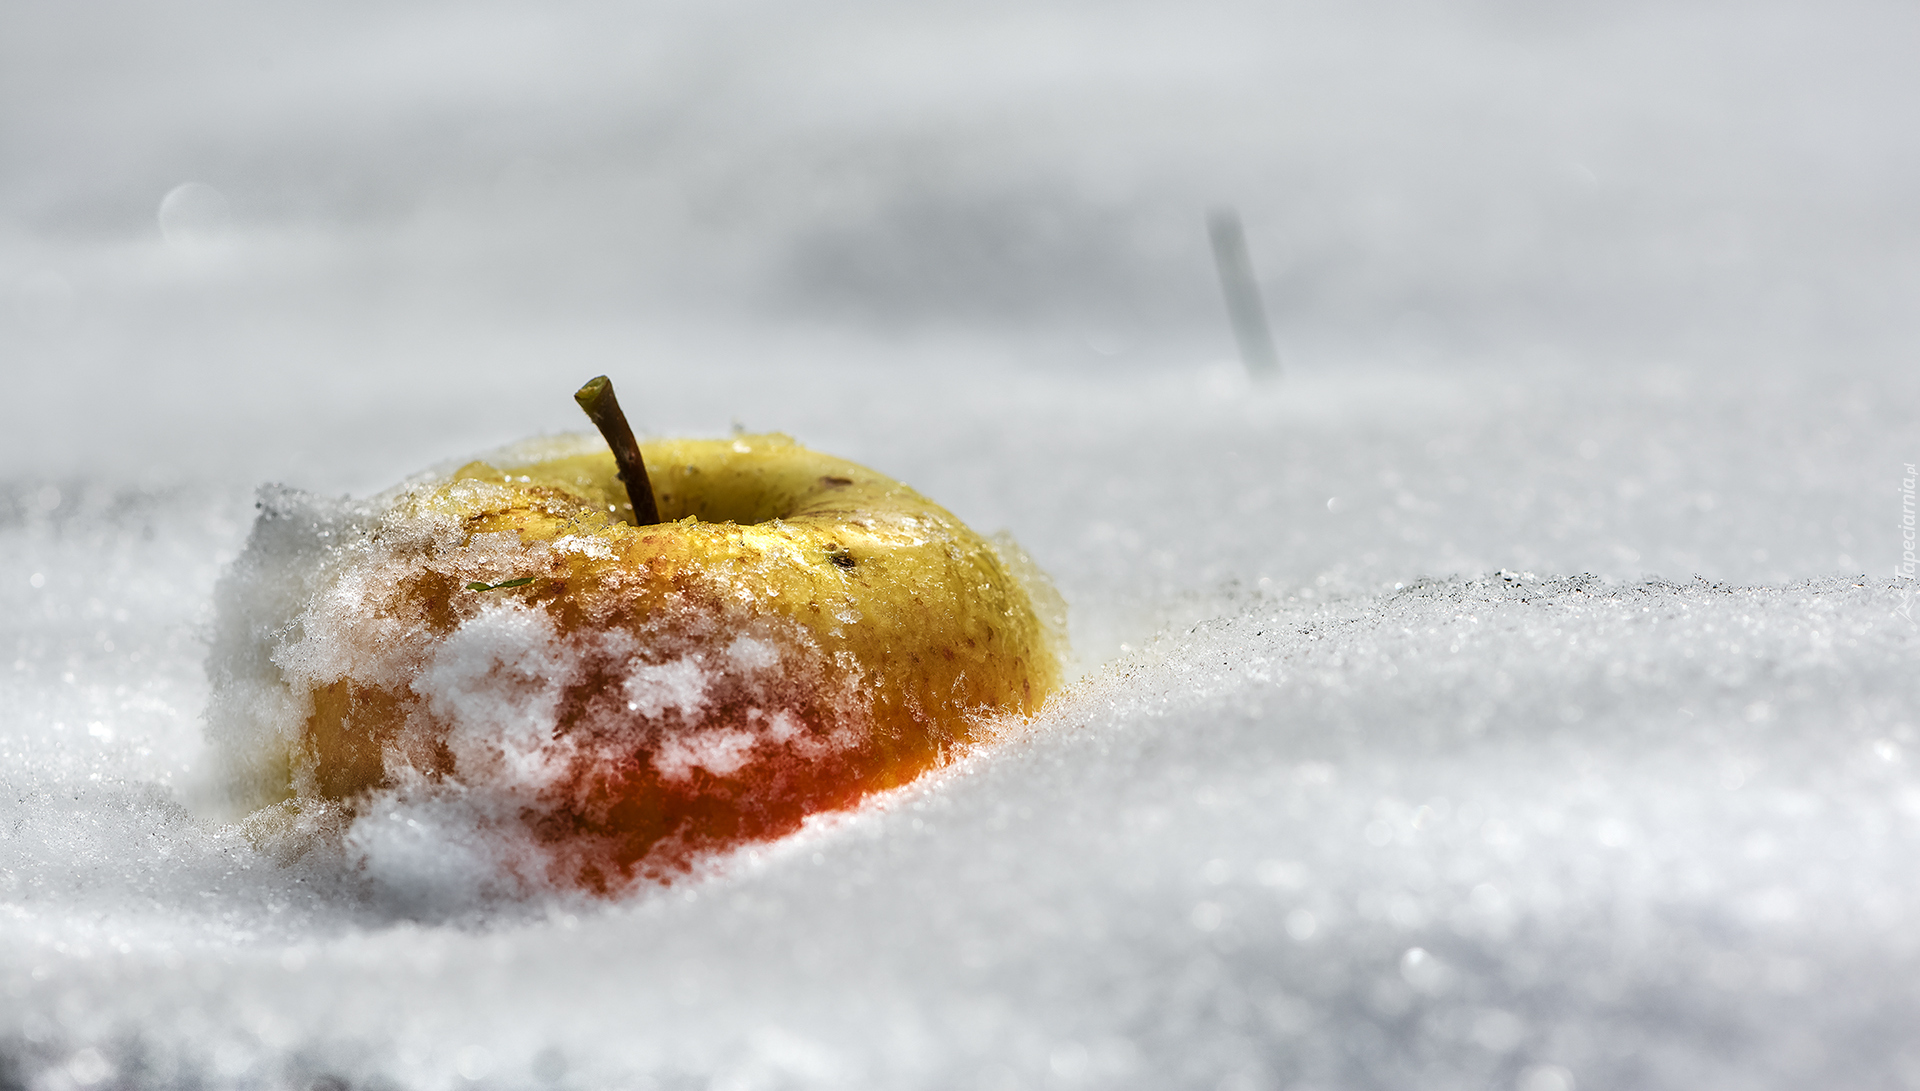 Śnieg, Jabłko